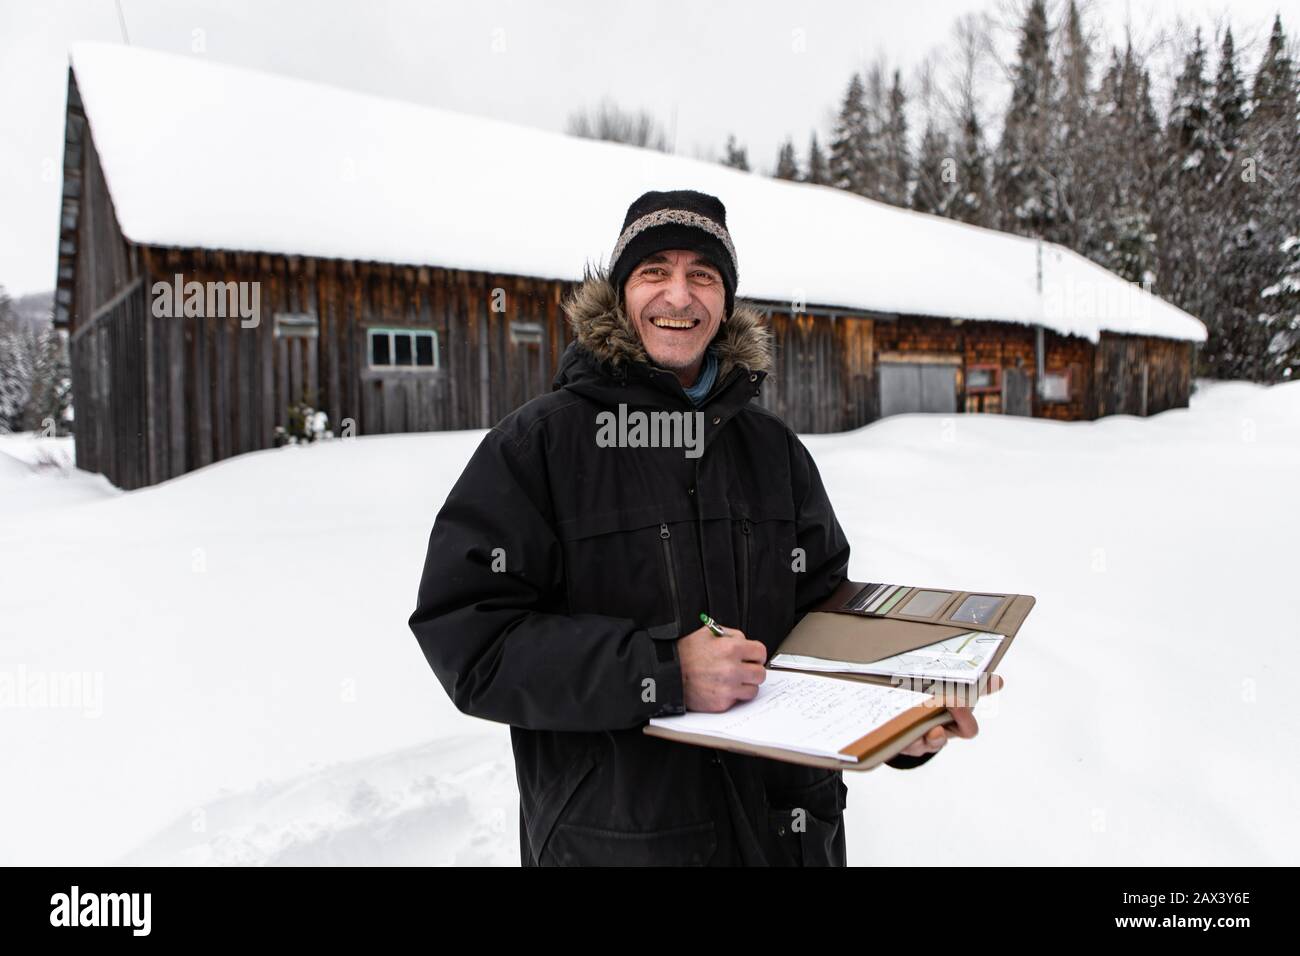 Hausinspektor mittleren Alters, der bei einer Inspektion Notizen machte. Lächelnder Mann mit Winterkleidung steht draußen im Schnee, Bauernhaushintergrund in Fachwerk Stockfoto